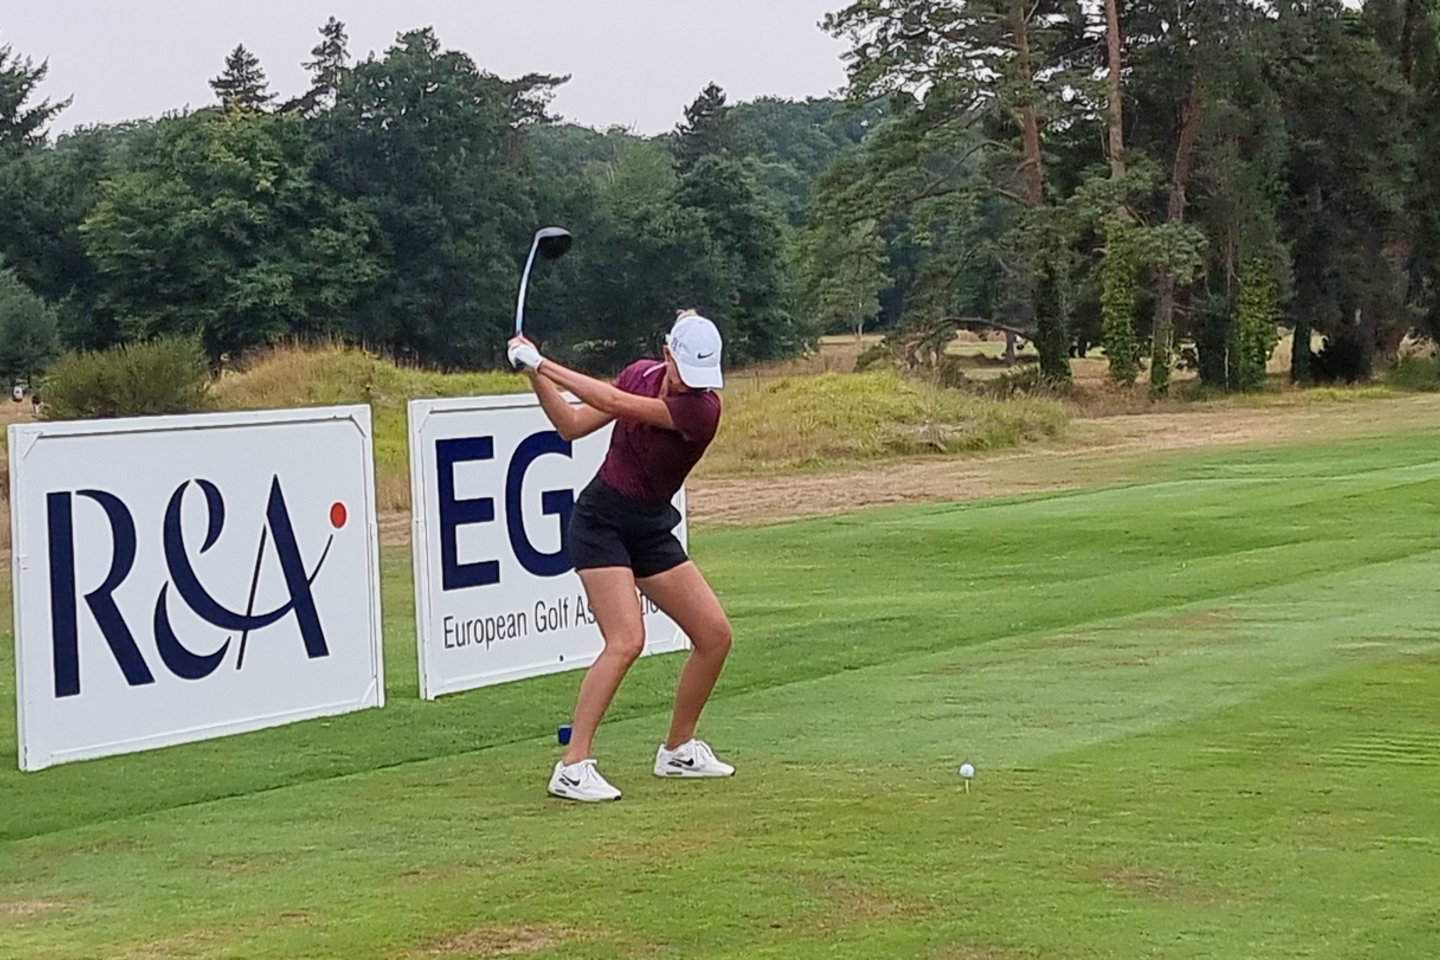 Prancūzijoje vykstančiame Europos moterų golfo čempionate pozicijas toliau gerina lietuvė Gilė Bitė Starkutė<br> A.Starkaus nuotr.